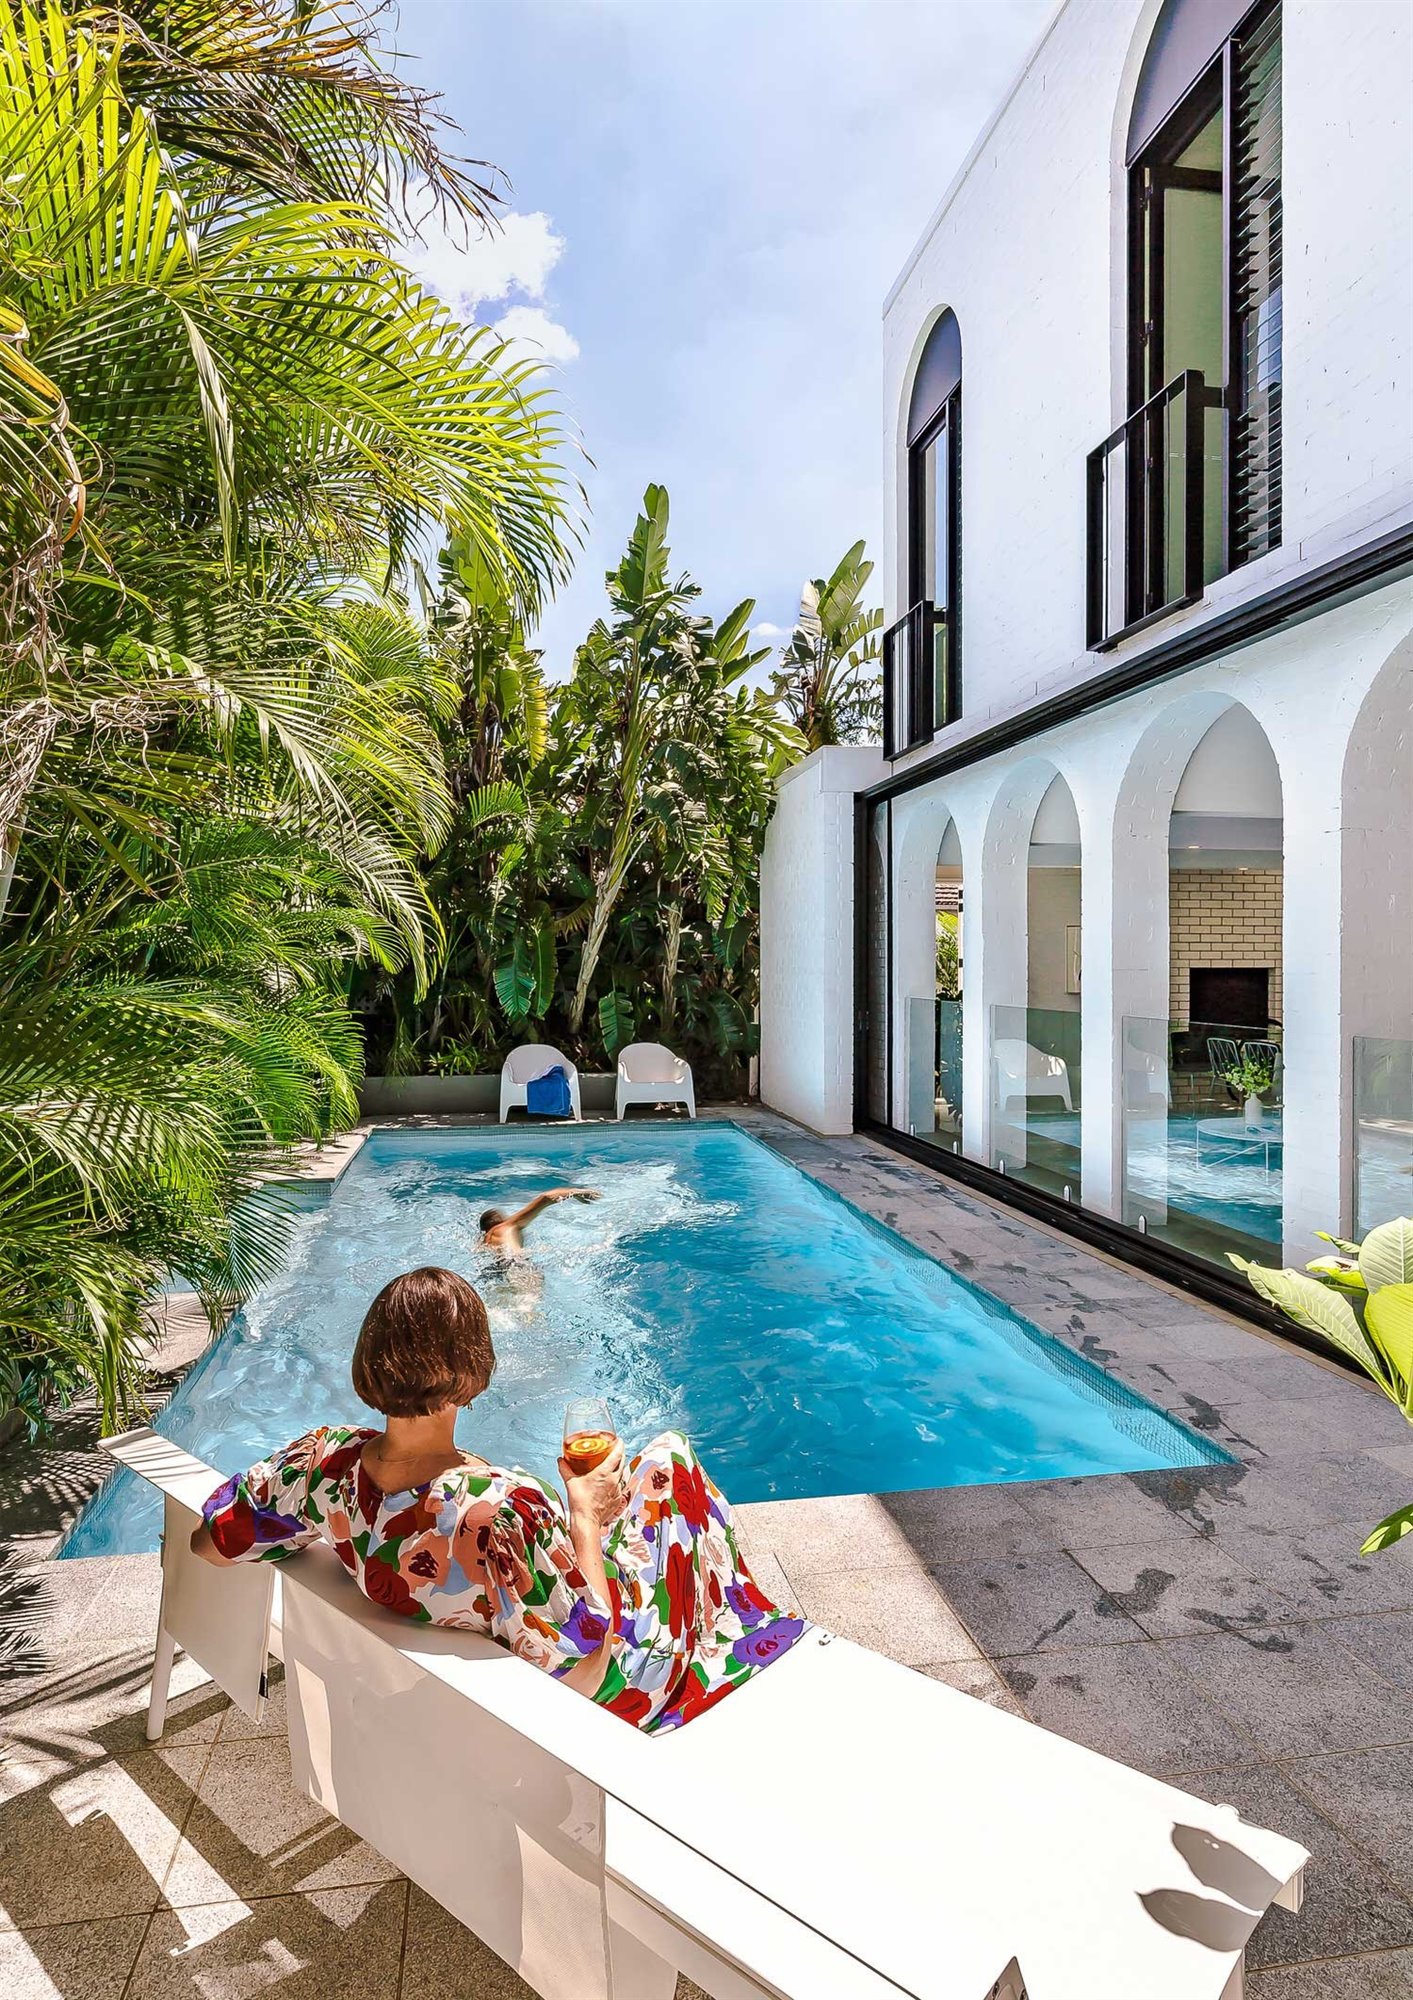 Casa de verano con piscina en Brisbane con fachada blanca con butacas blancas